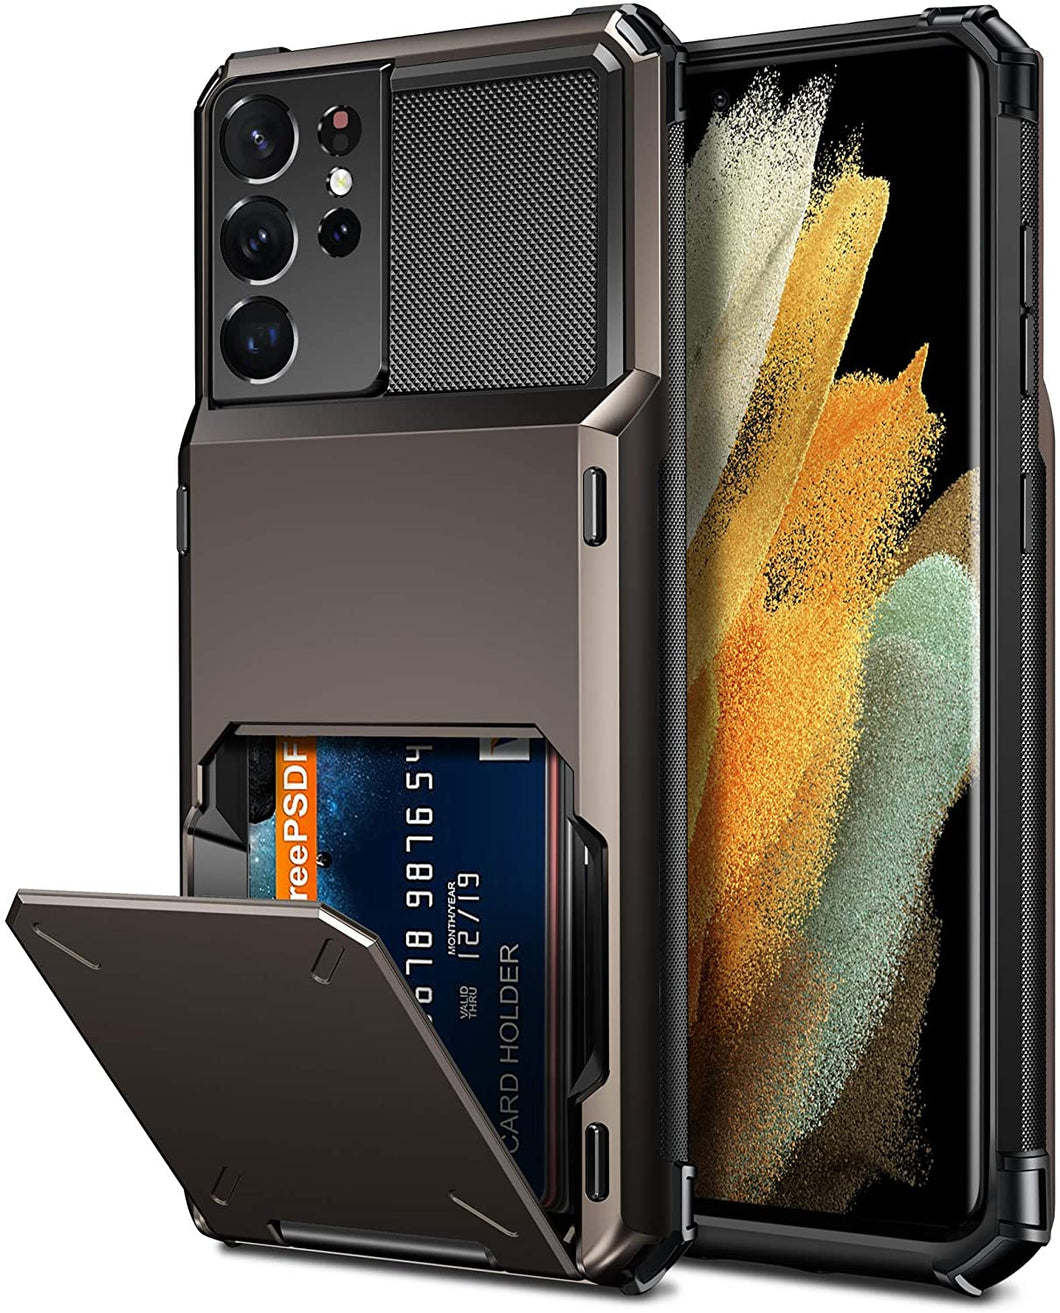 [Casekis] Travel Wallet Folder Card Slot Holder Case For Samsung S21 Ultra - Casekis